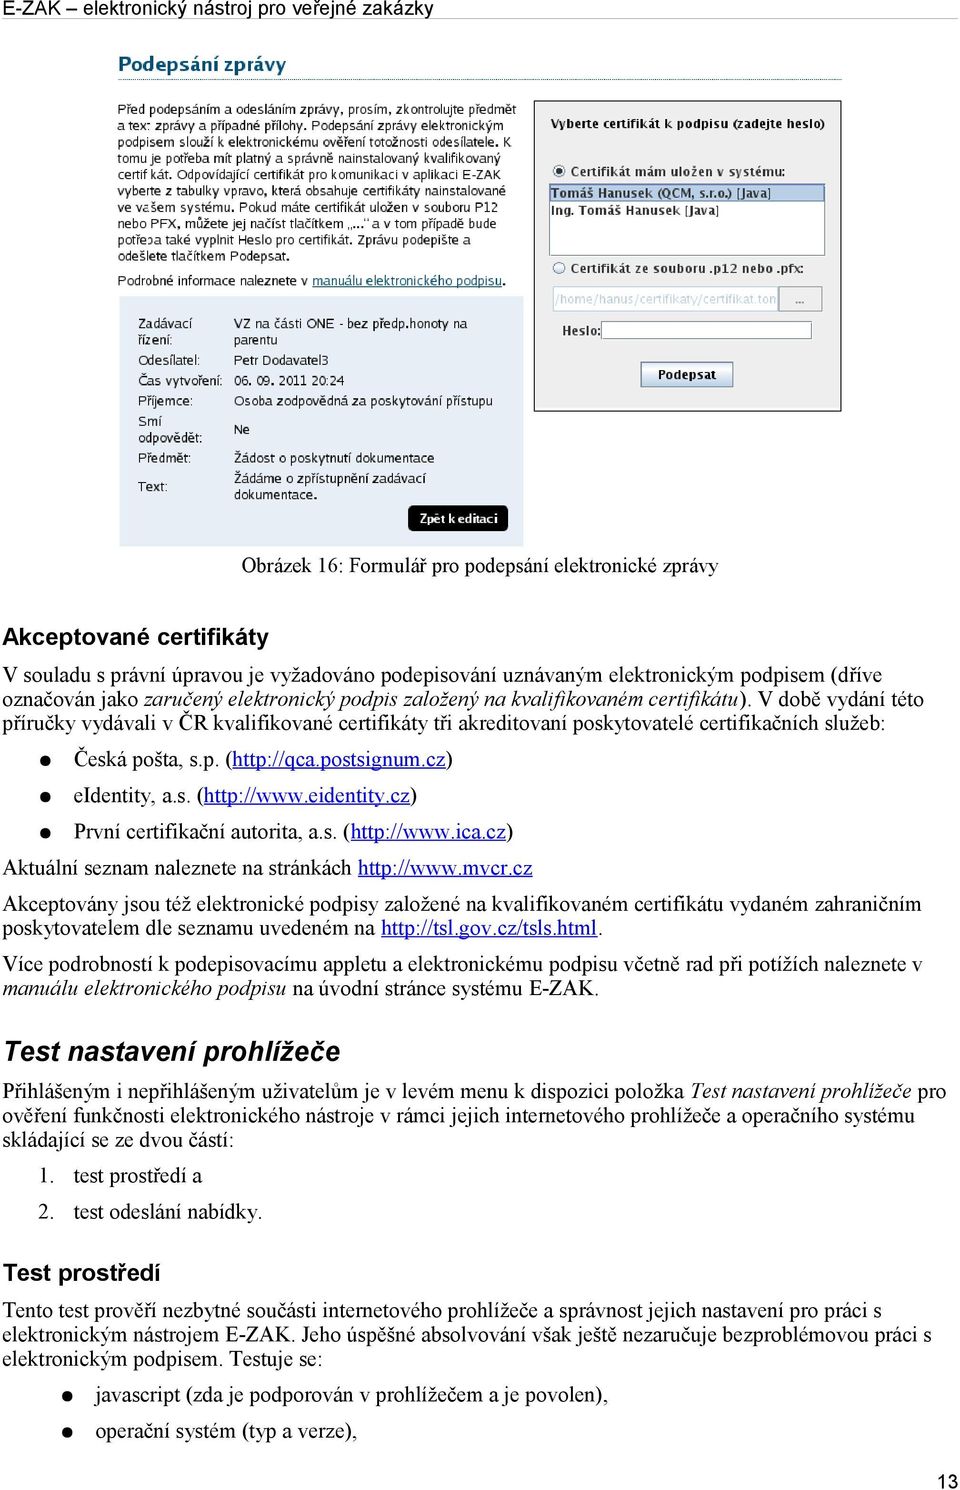 postsignum.cz) eidentity, a.s. (http://www.eidentity.cz) První certifikační autorita, a.s. (http://www.ica.cz) Aktuální seznam naleznete na stránkách http://www.mvcr.